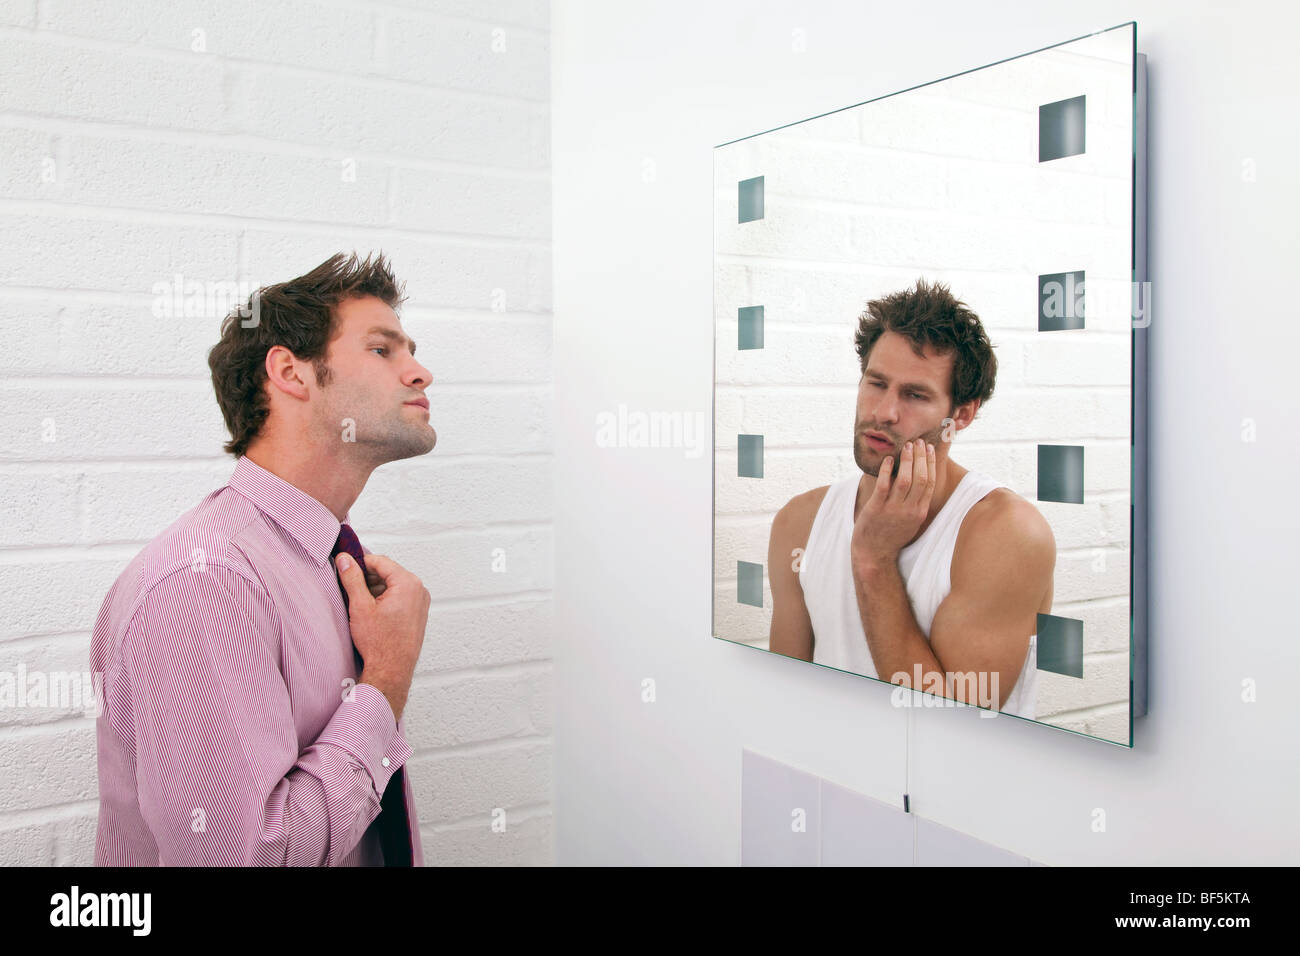 Concetto di immagine di un uomo di prepararsi al mattino con l'immagine speculare di come egli si sente realmente. Foto Stock